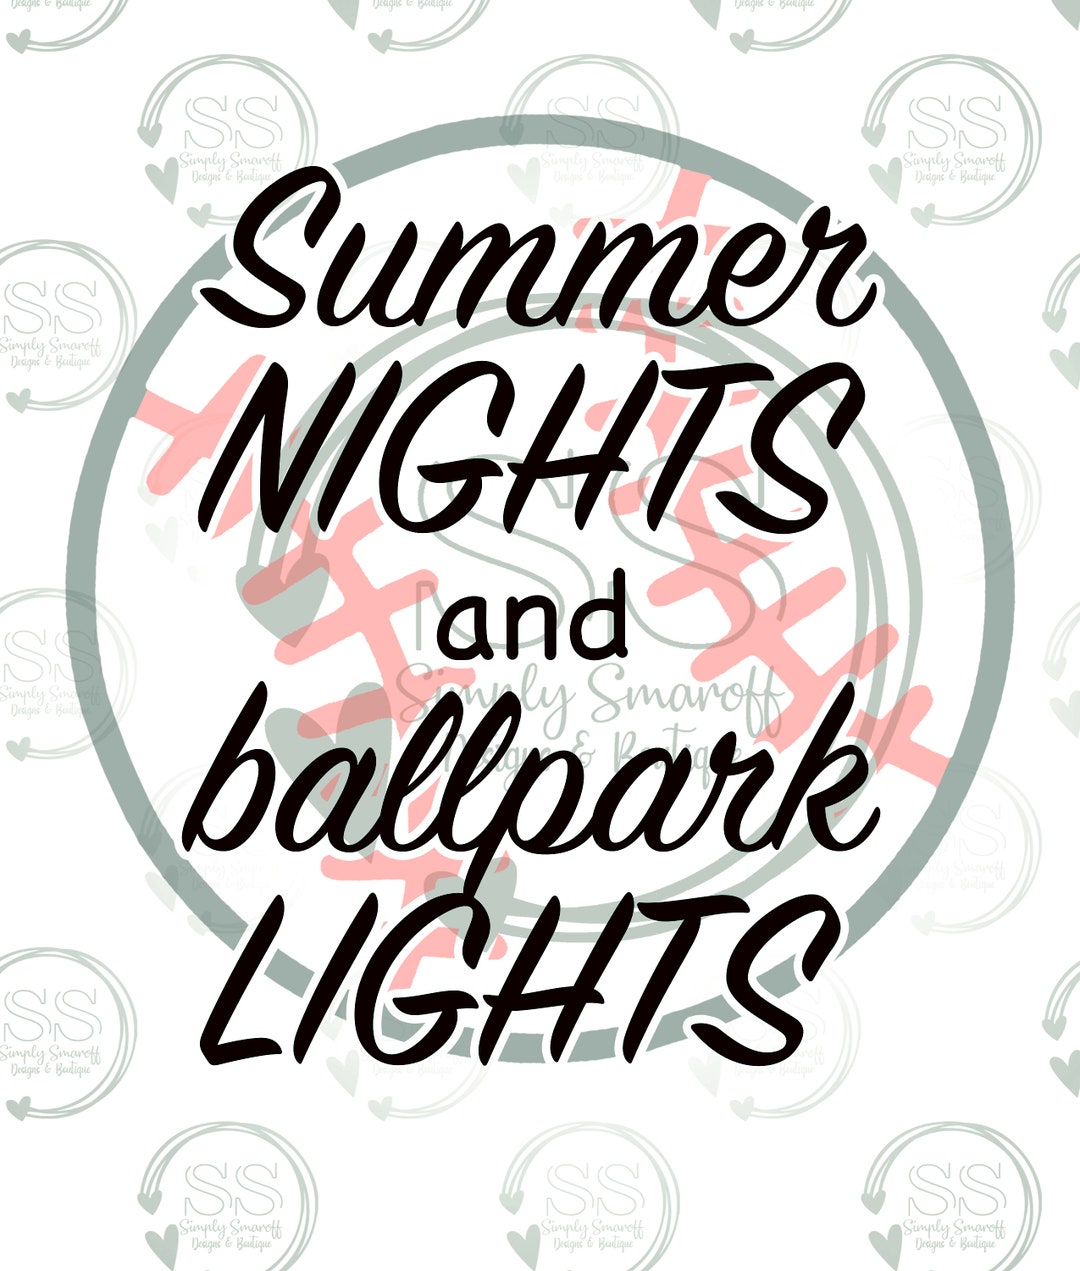 Summer Nights & Ballpark Lights PNG - Etsy